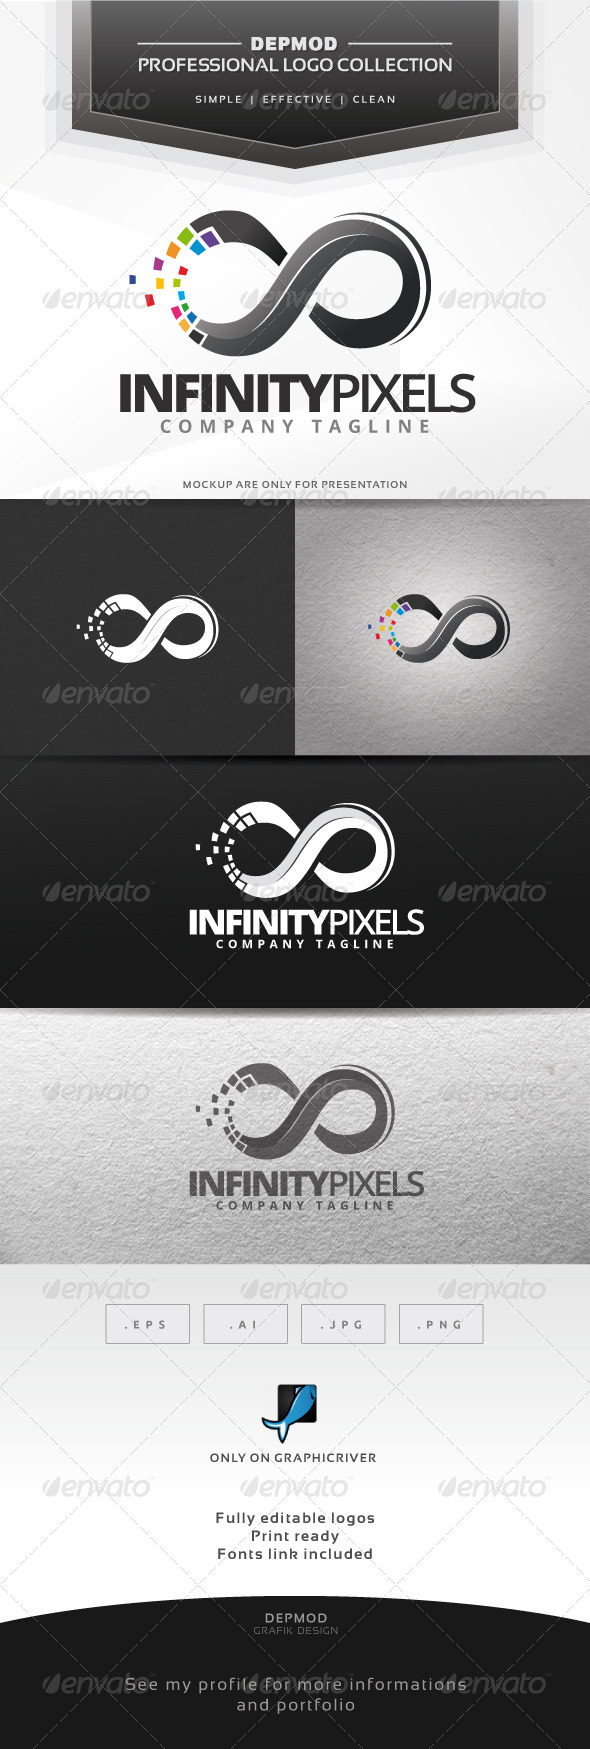 GraphicRiver Infinity Pixels Logo 6858777